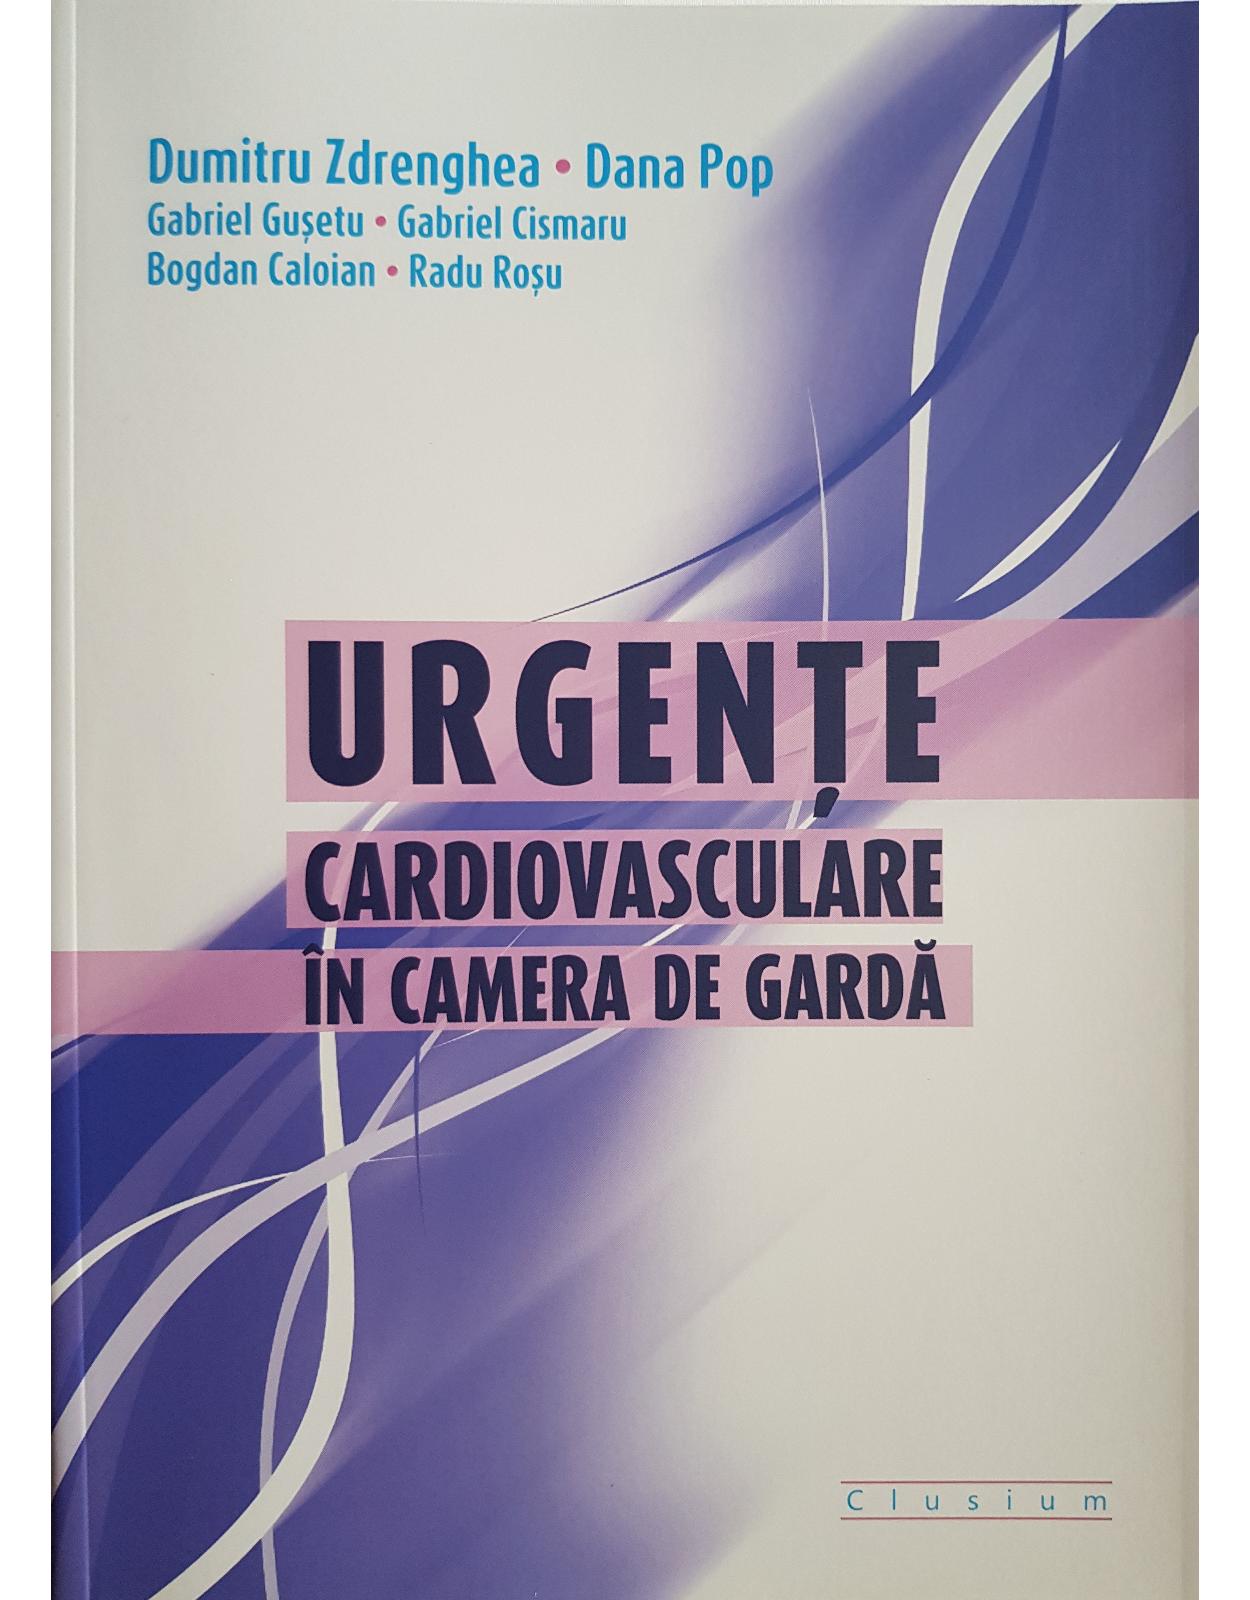 Urgente Cardiovasculare in camera de garda, editia a II-a